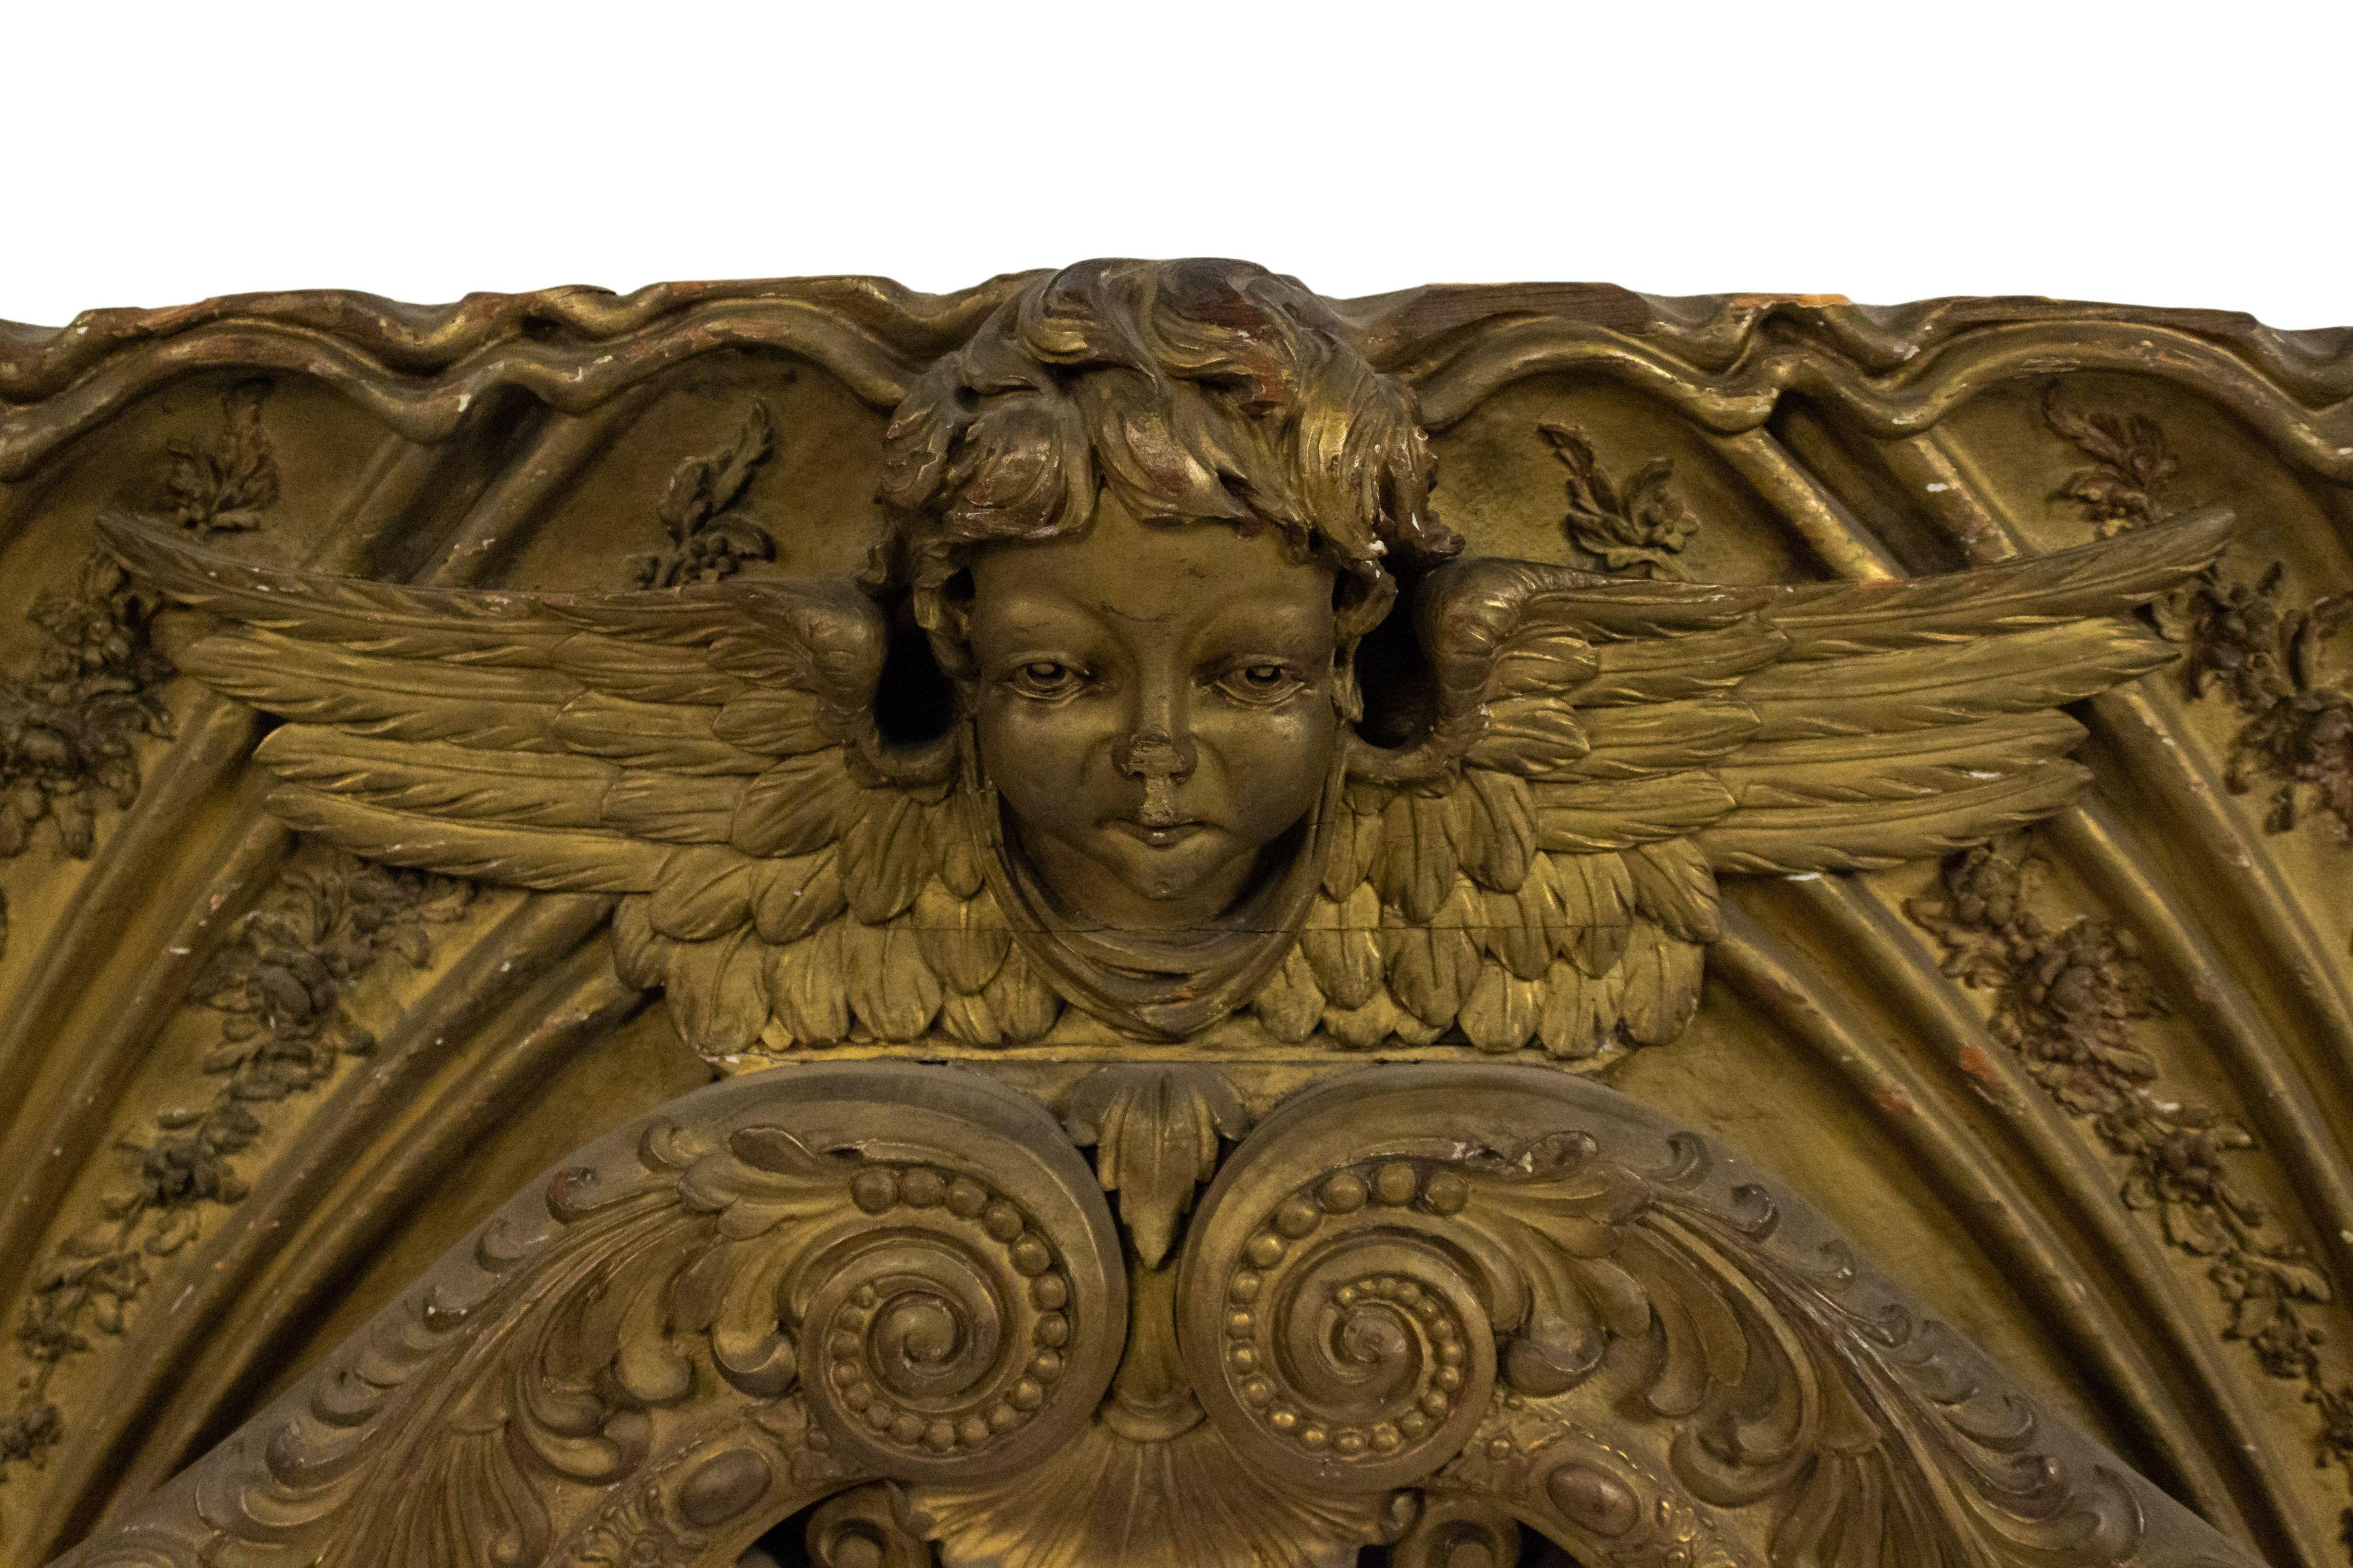 Grande plaque murale horizontale en forme d'arc doré, de style Victorien français, avec 3 têtes de cupidons ailés sculptés et un motif filigrane en volutes.
  